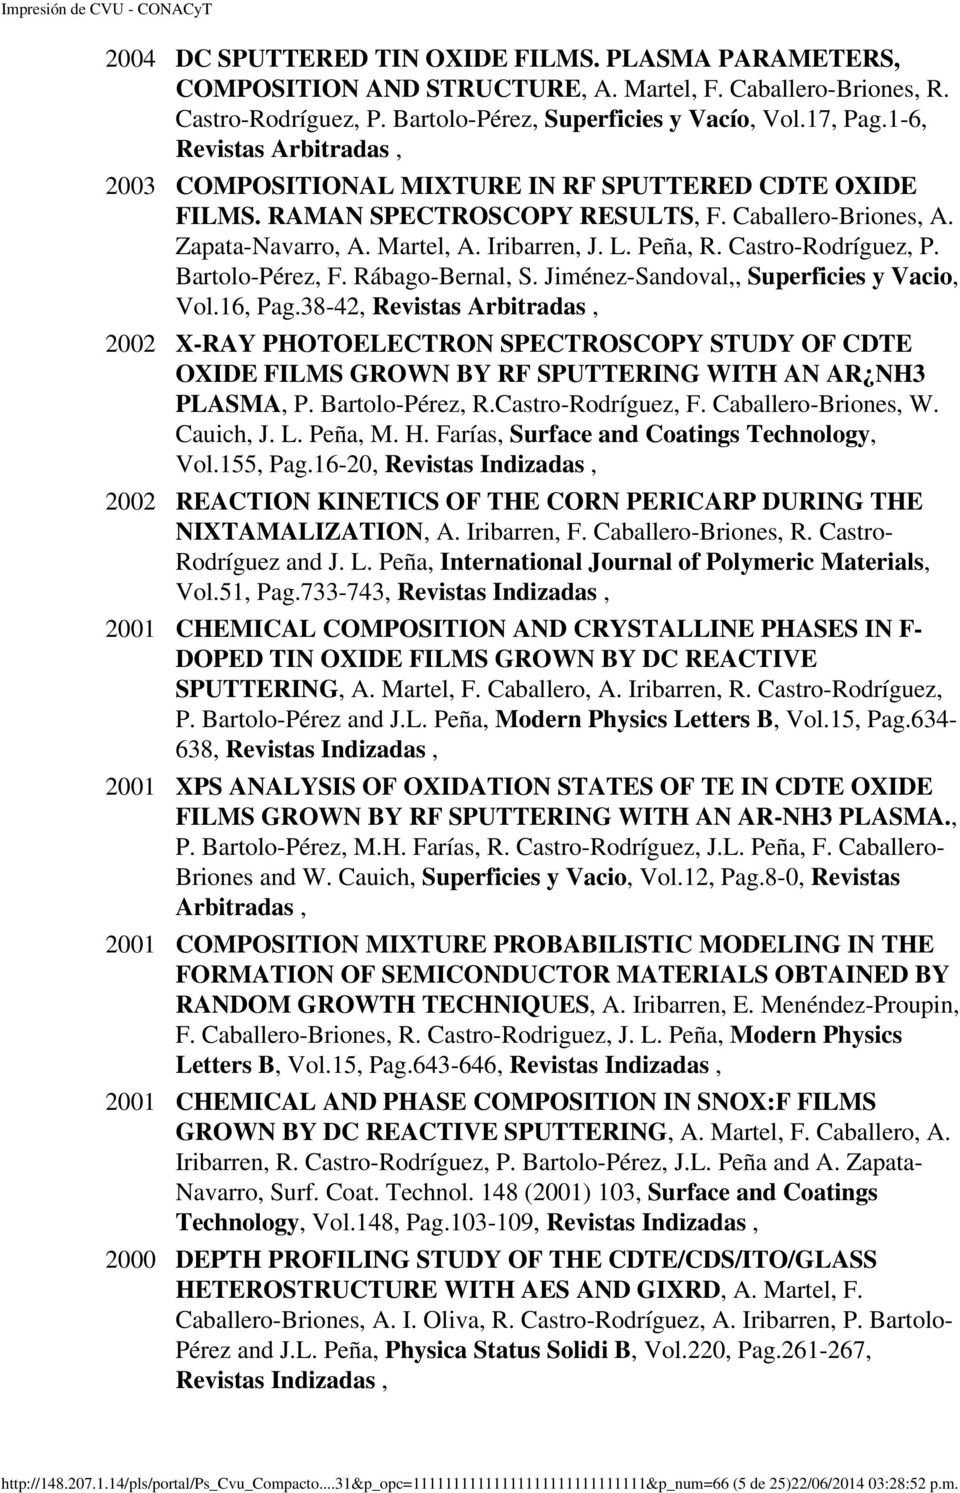 Castro-Rodríguez, P. Bartolo-Pérez, F. Rábago-Bernal, S. Jiménez-Sandoval,, Superficies y Vacio, Vol.16, Pag.